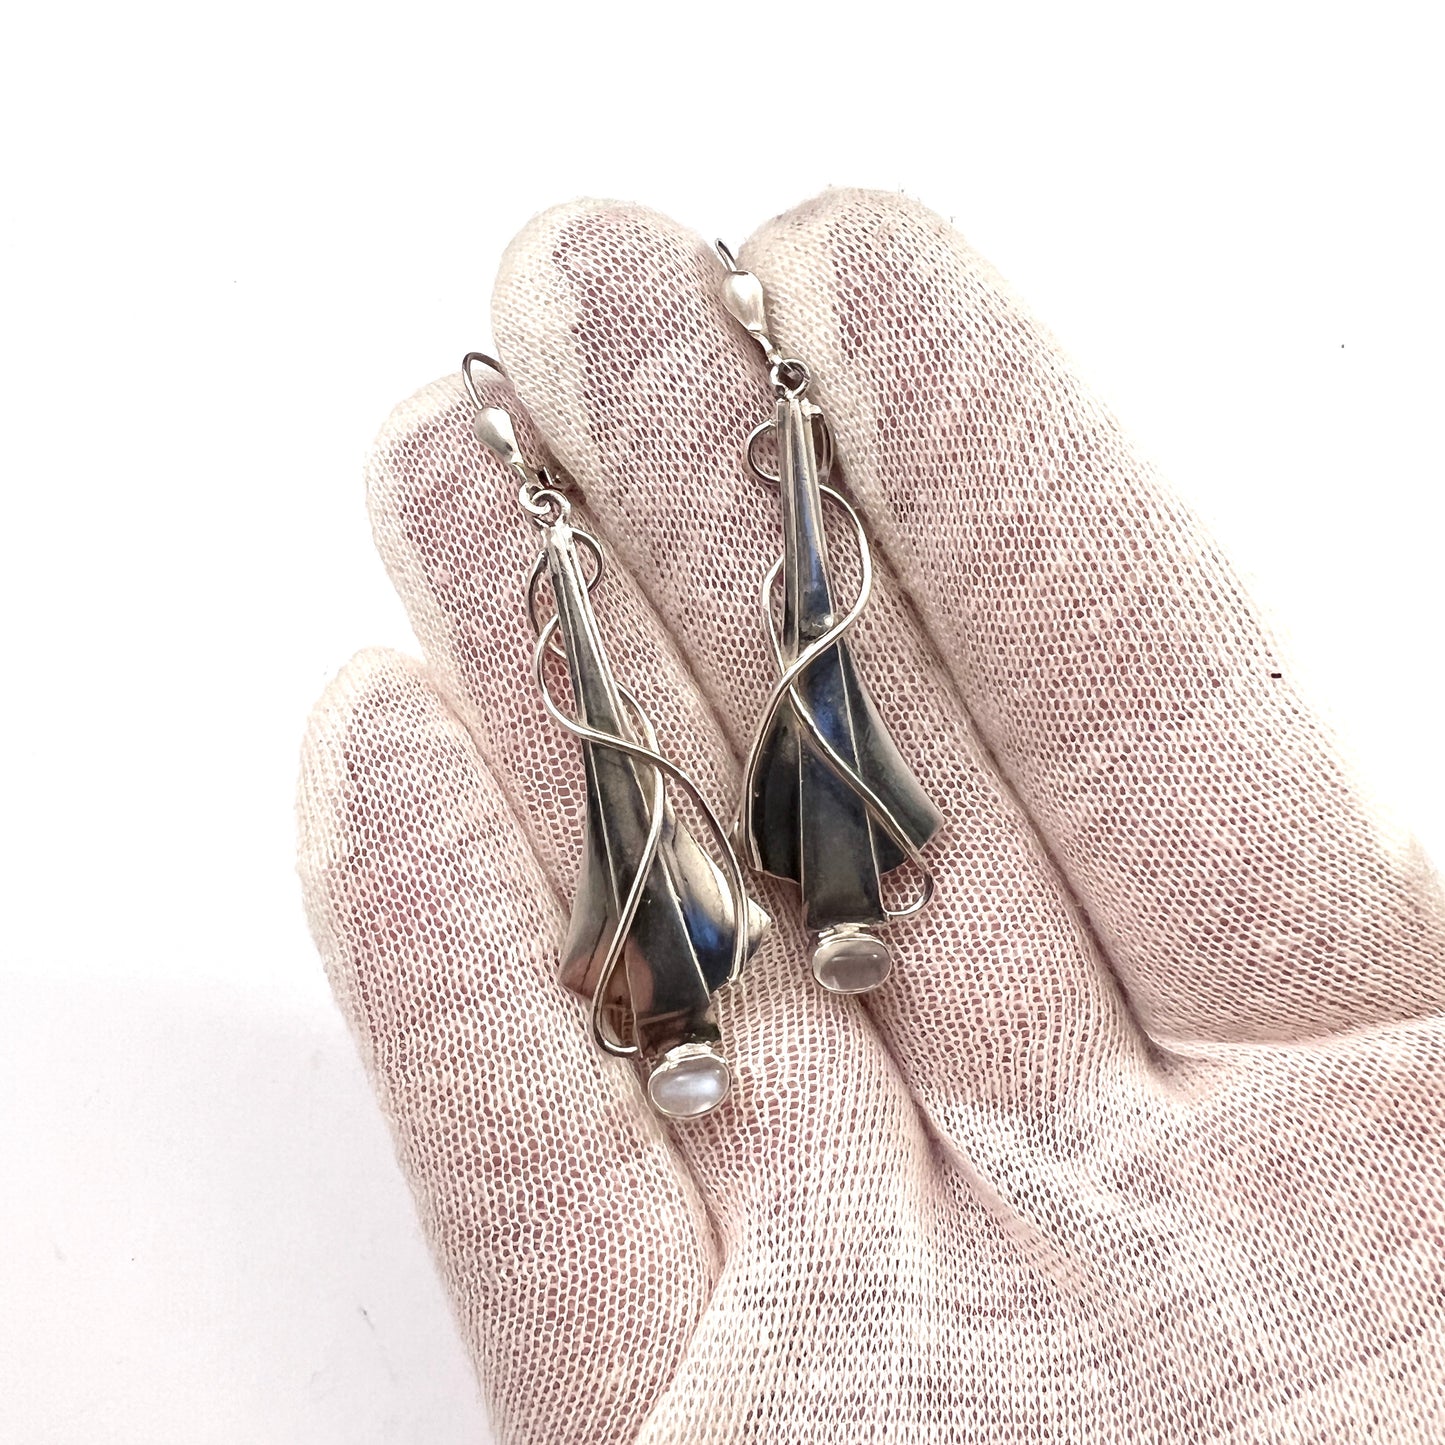 Vintage Large Pair of Sterling Silver Moonstone Earrings.